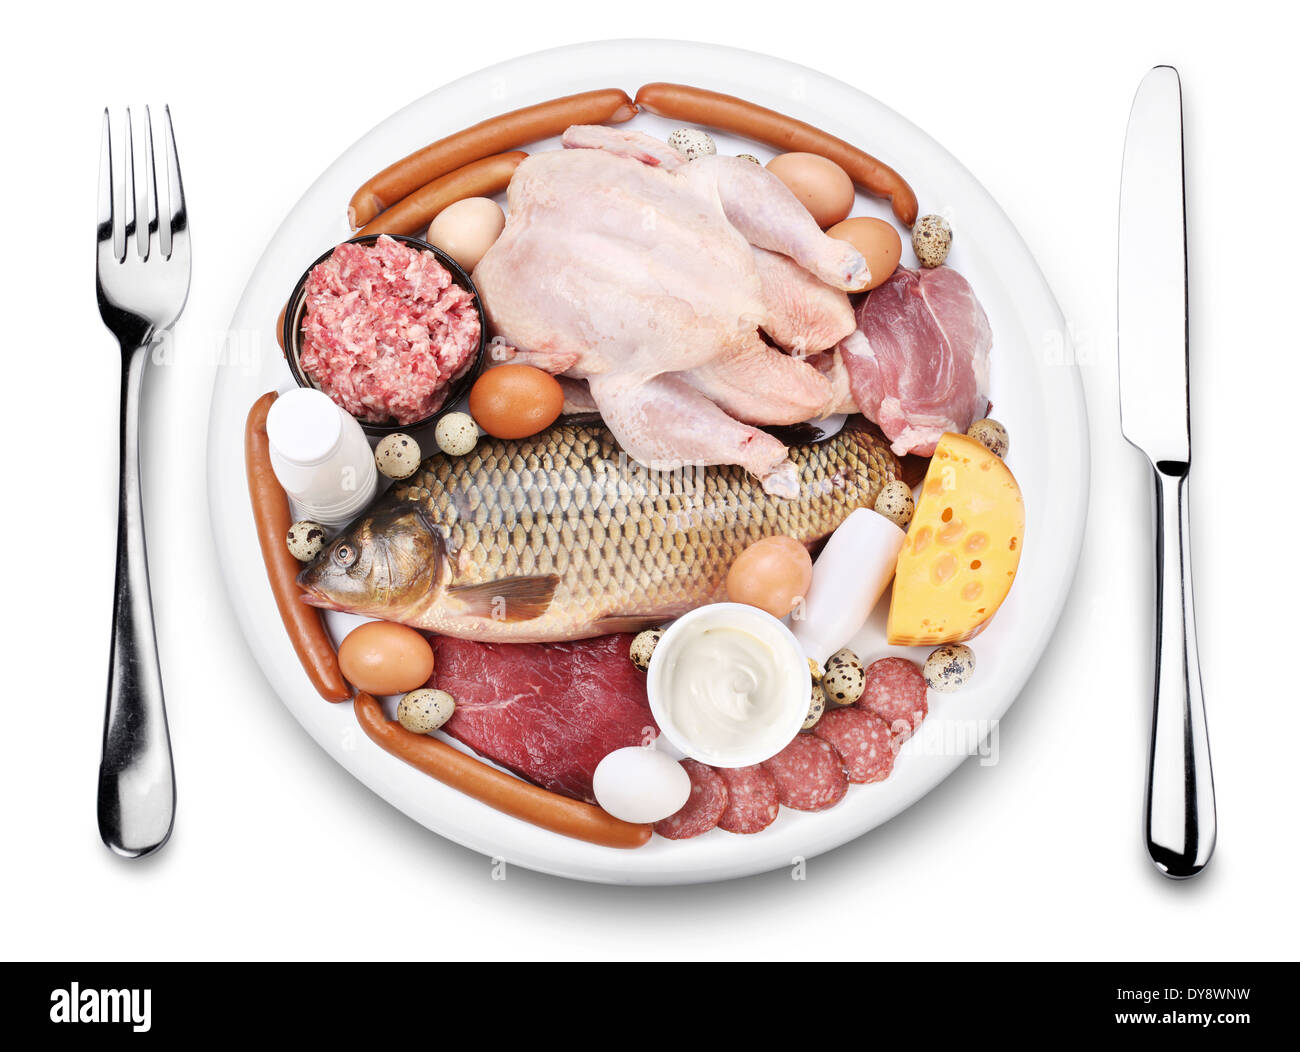 Rohes Fleisch und Milchprodukte auf einem Teller. Ansicht von oben, auf einem weißen Hintergrund. Stockfoto